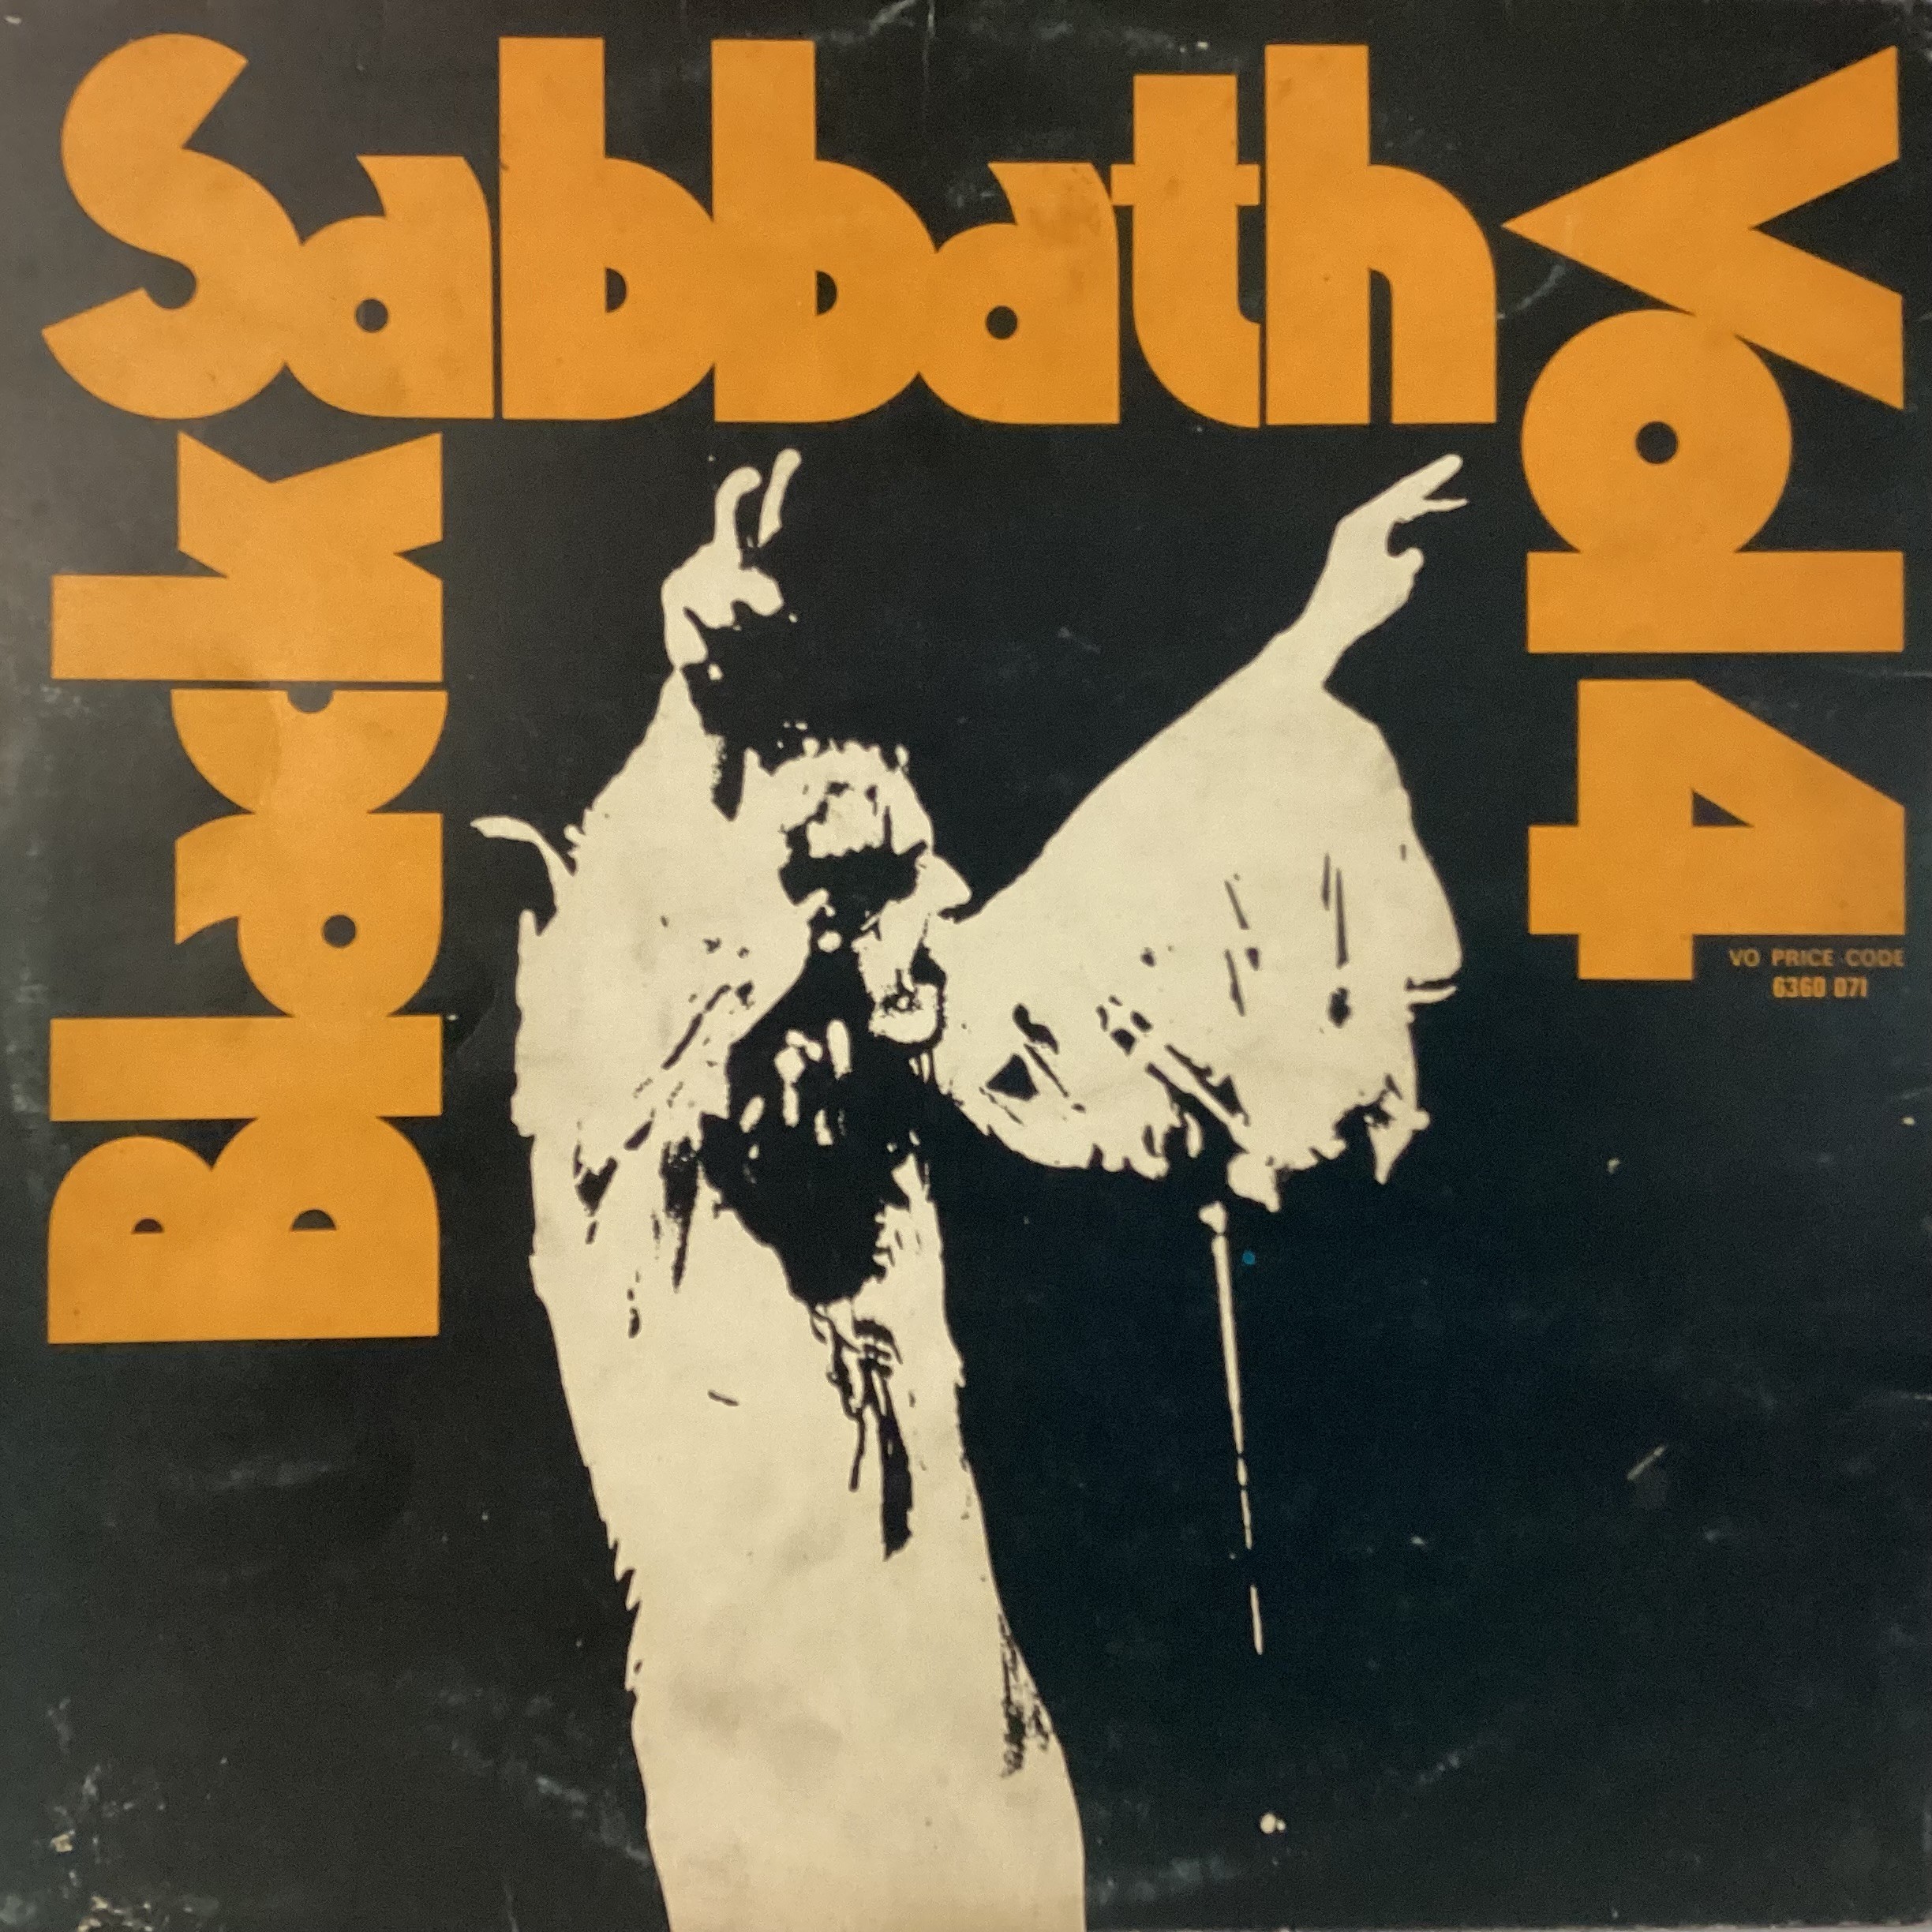 BLACK SABBATH "VOL.4" ORIGINAL PRESSING VIRTIGO SWIRL. This is a 1972 original pressing of Black - Image 2 of 7